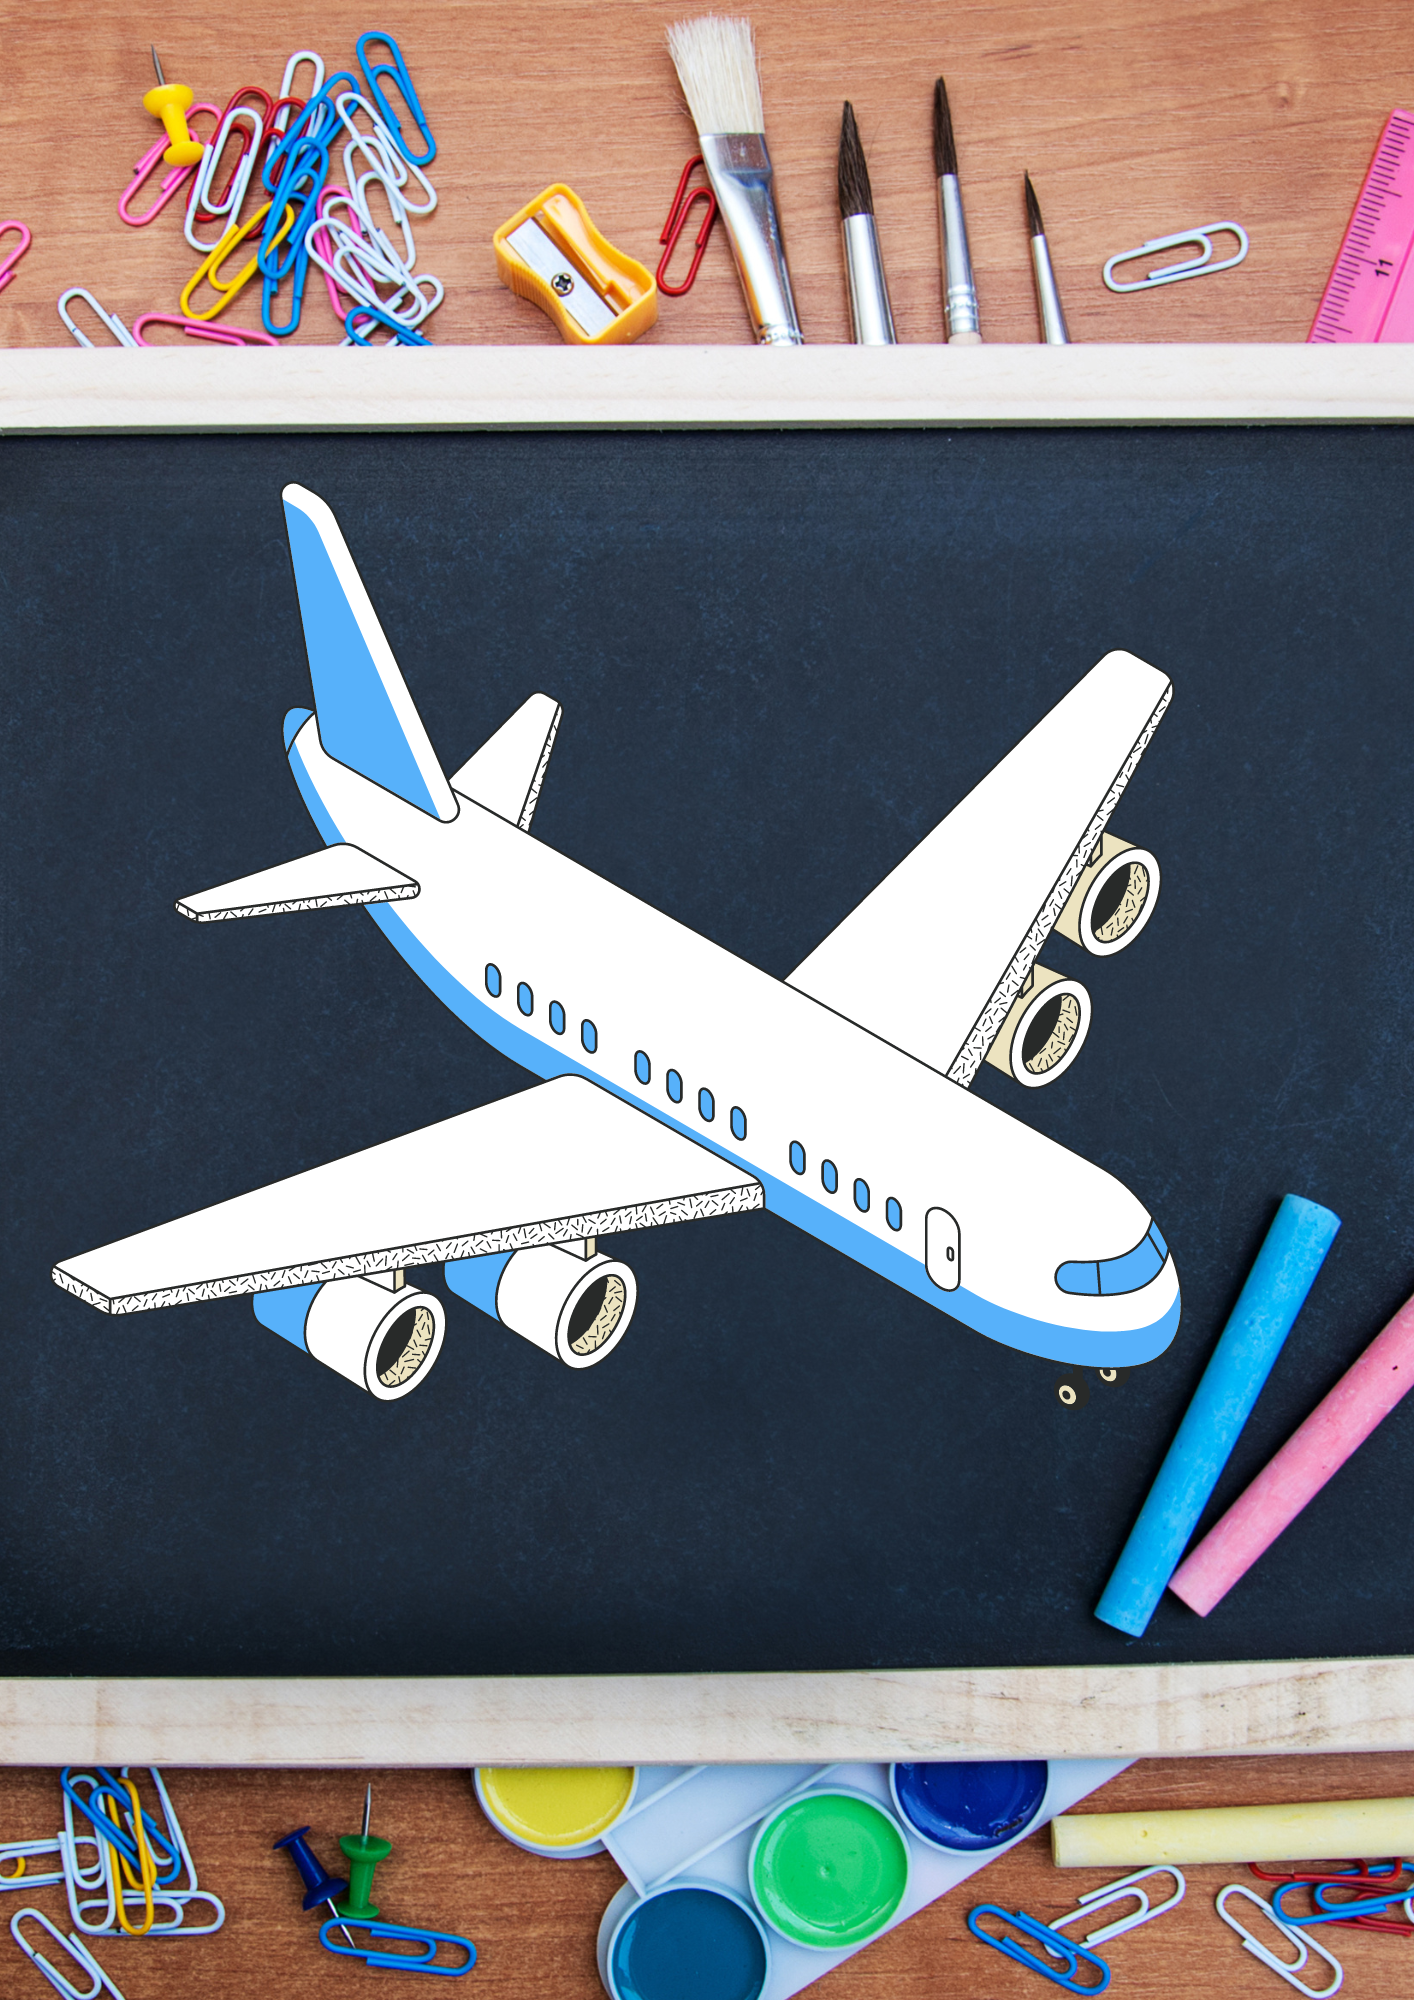 Cristina Lacerda – Avião e Escola – Qual o significado para a comparação?